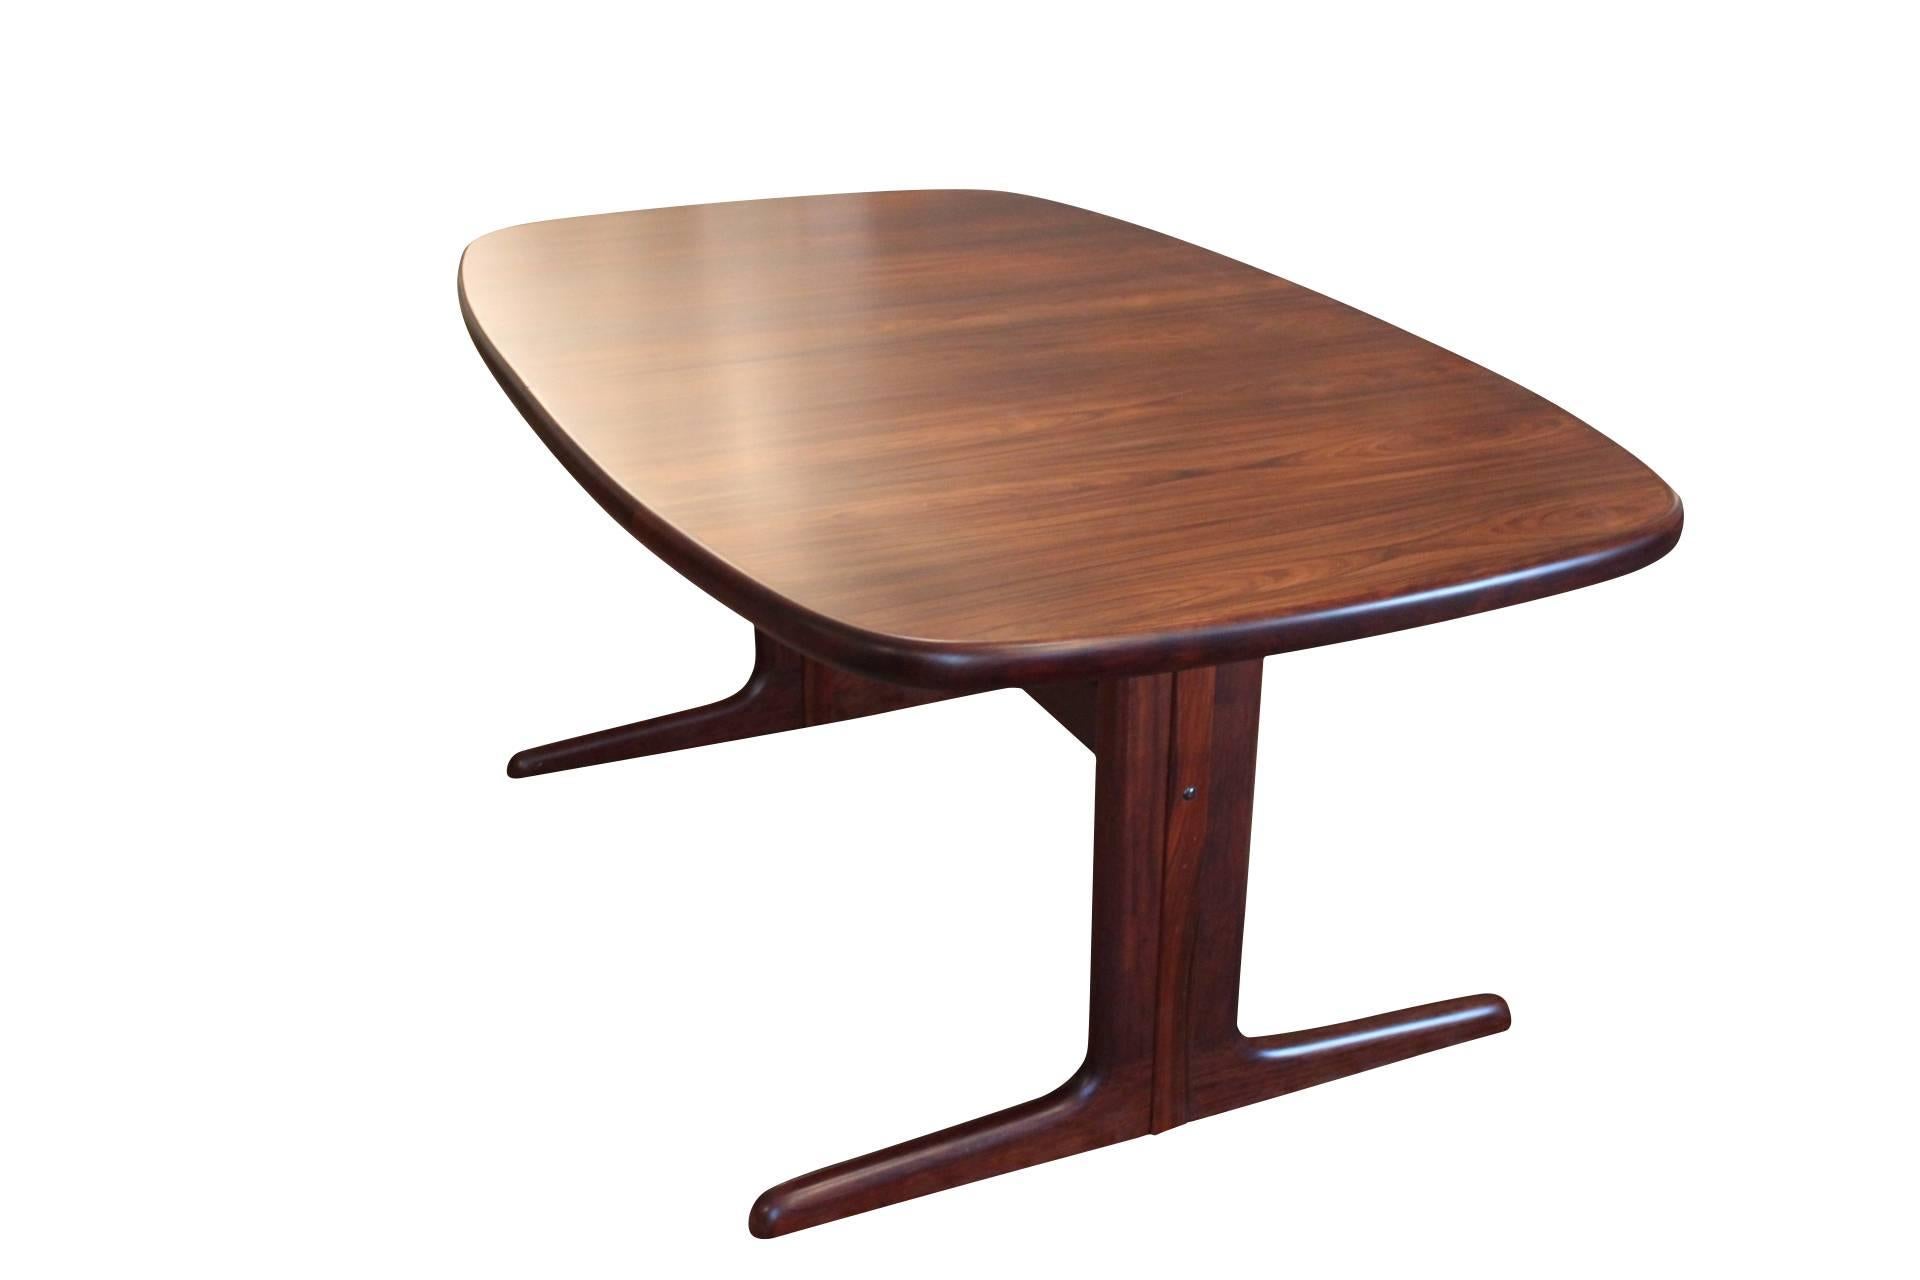 Esstisch Nr. 74 von Skovby Möbelfabrik in klassischer Ellipsenform mit zwei Verlängerungsplatten, die unter der Tischplatte verborgen sind. Der Tisch ist aus Palisanderholz und bietet Platz für 6-12 Personen. Der Tisch ist von dänischem Design.